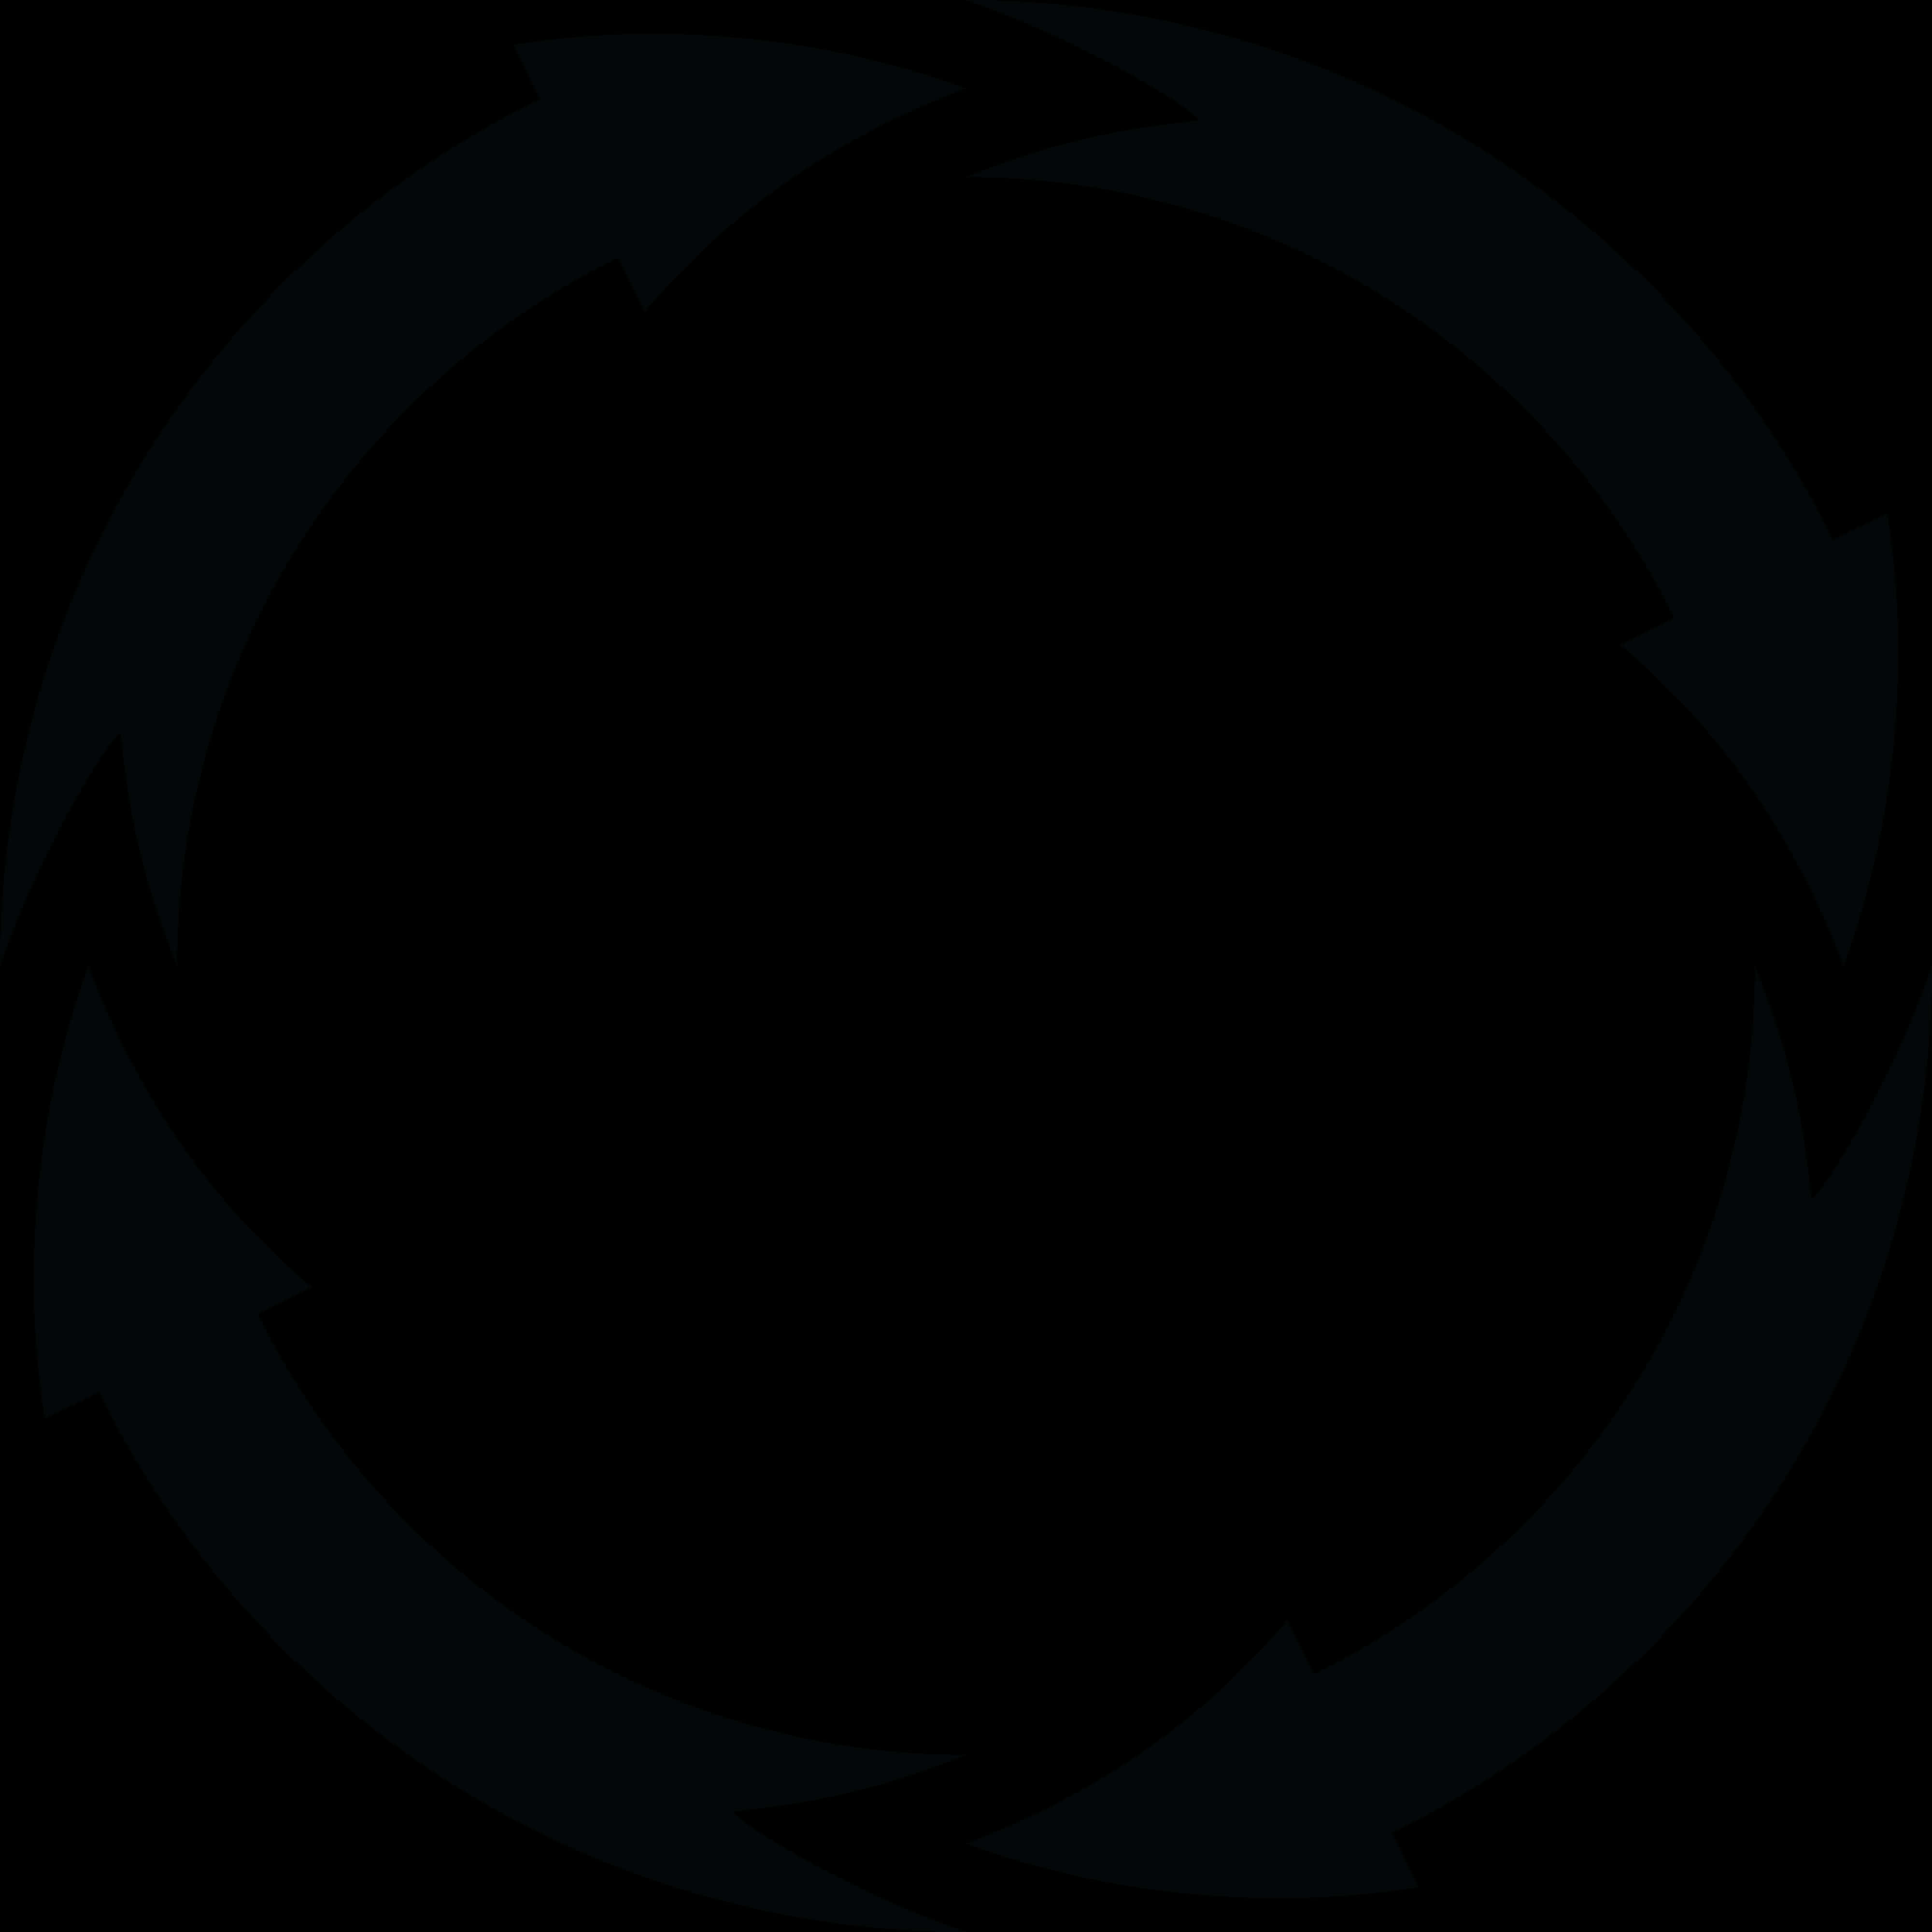 Circular Arrow Transparent Background PNG image